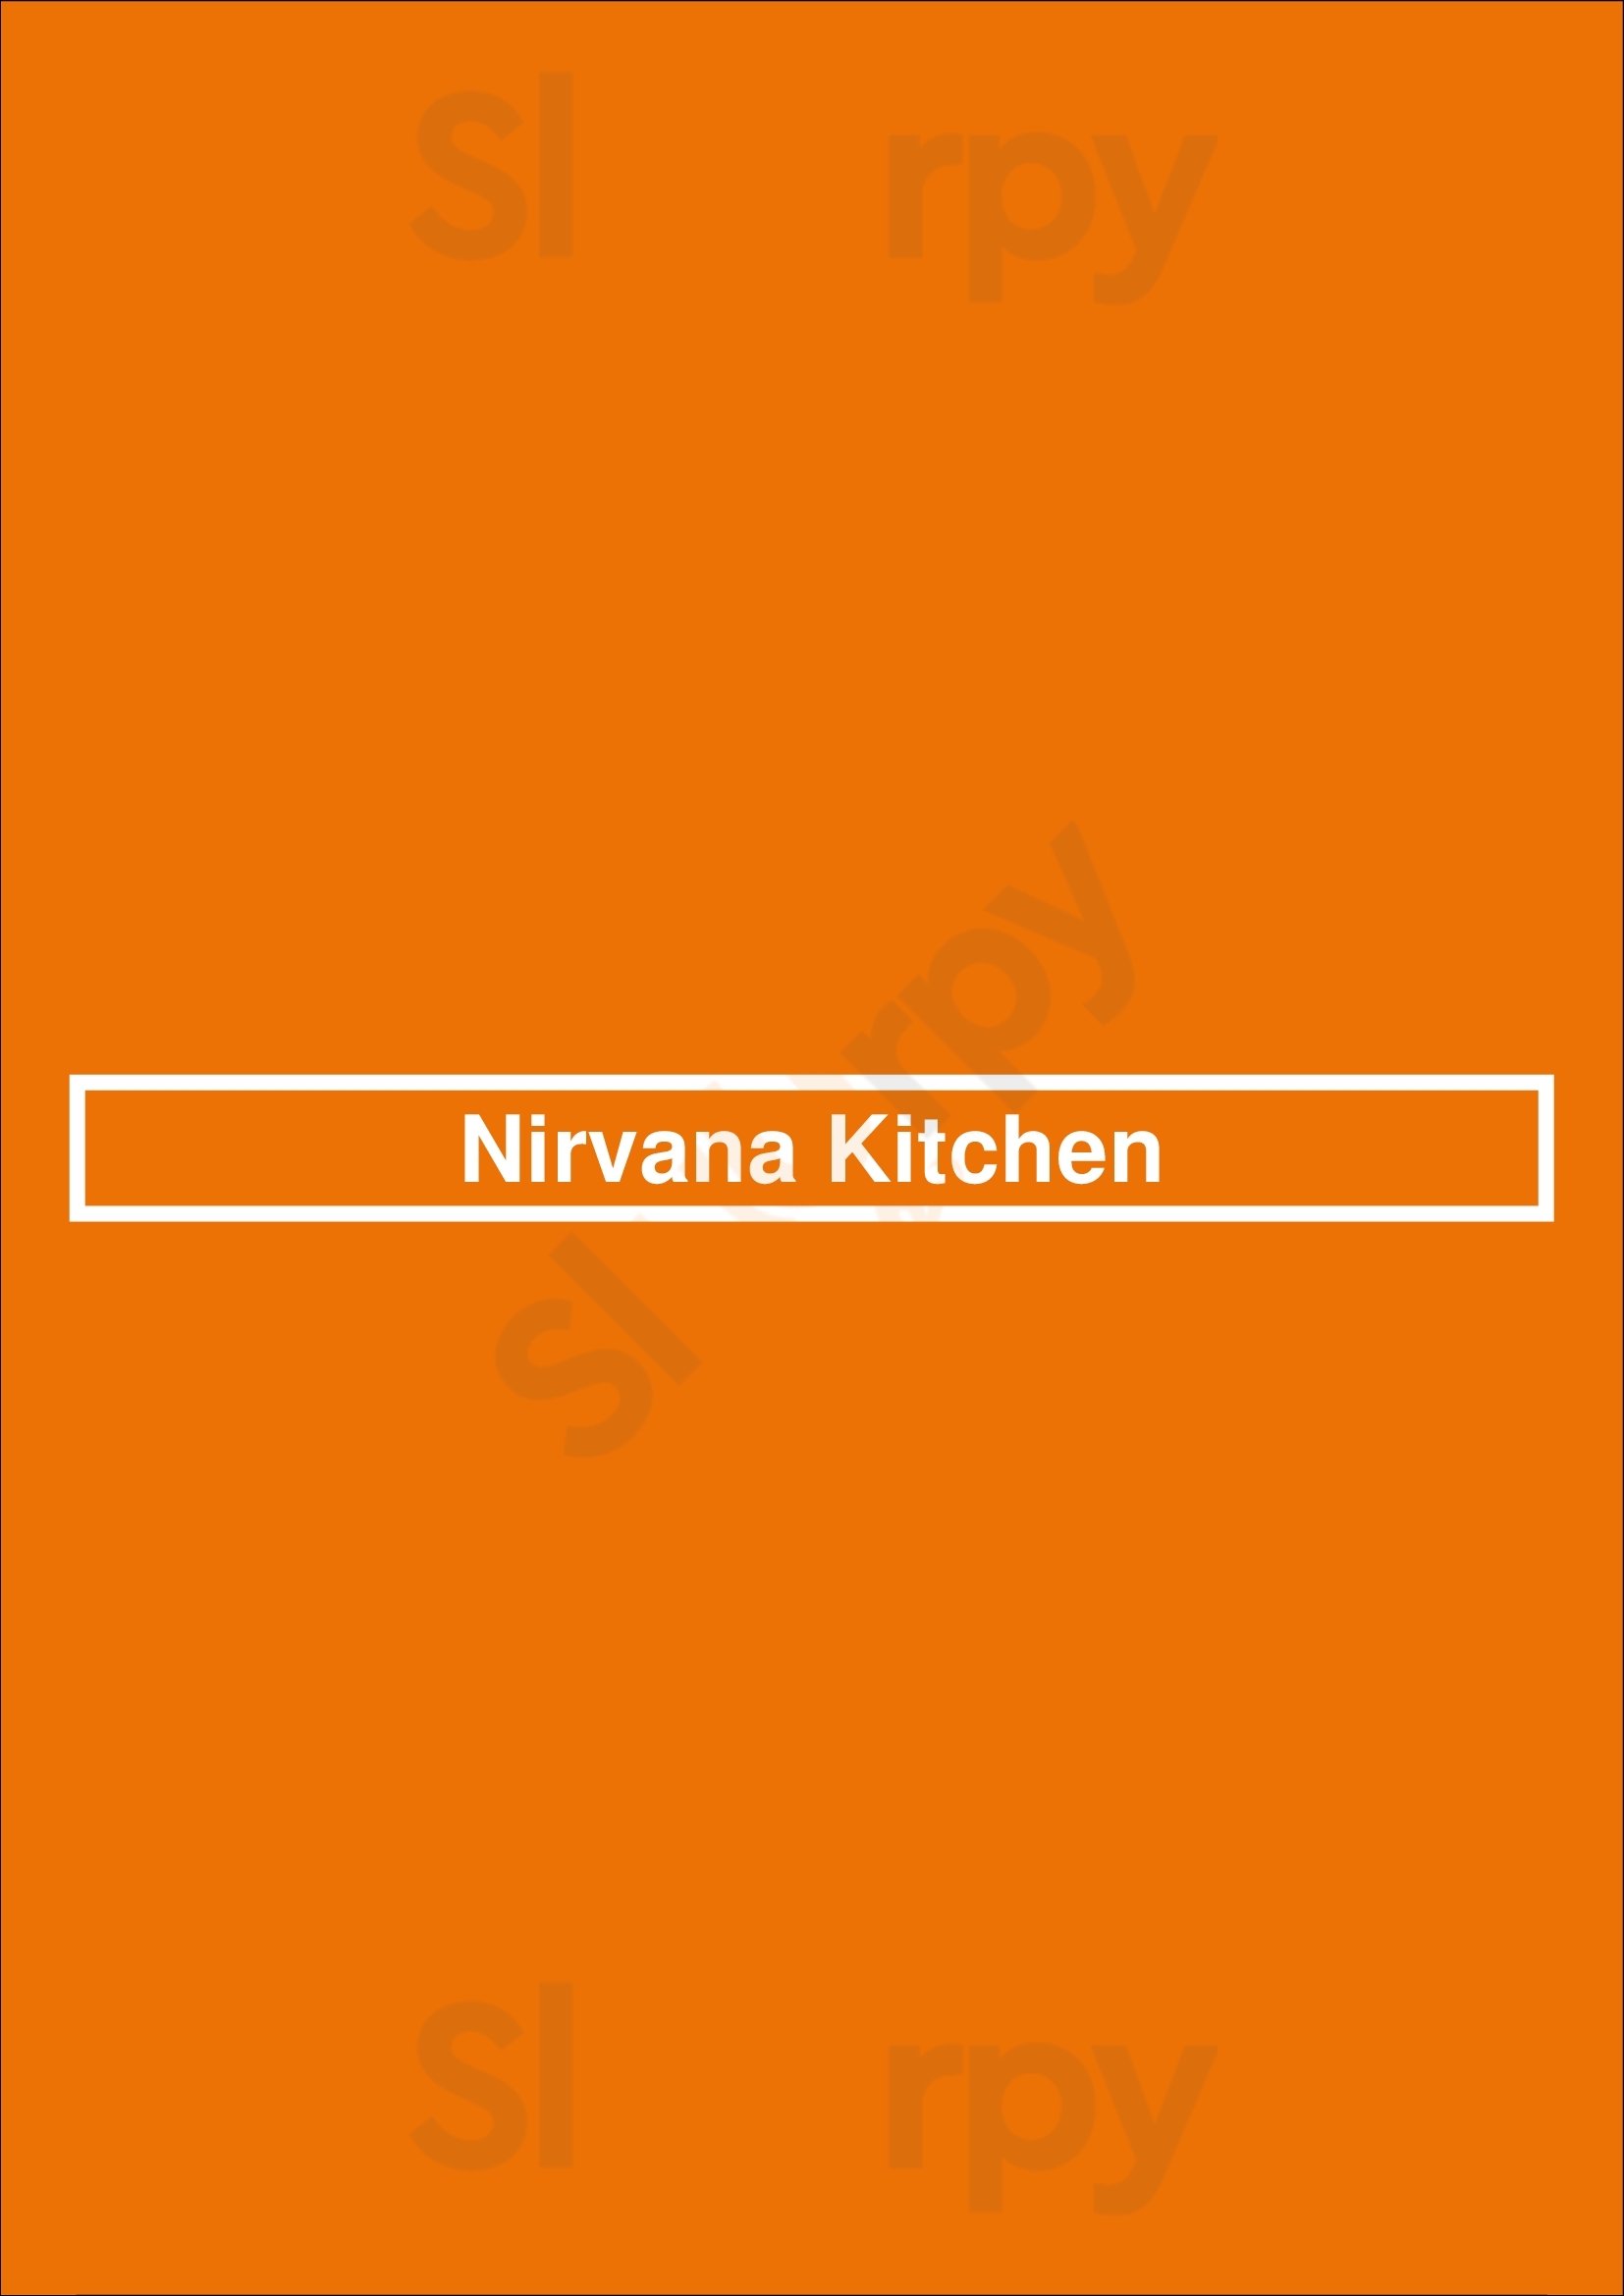 Nirvana Kitchen Louvain Menu - 1